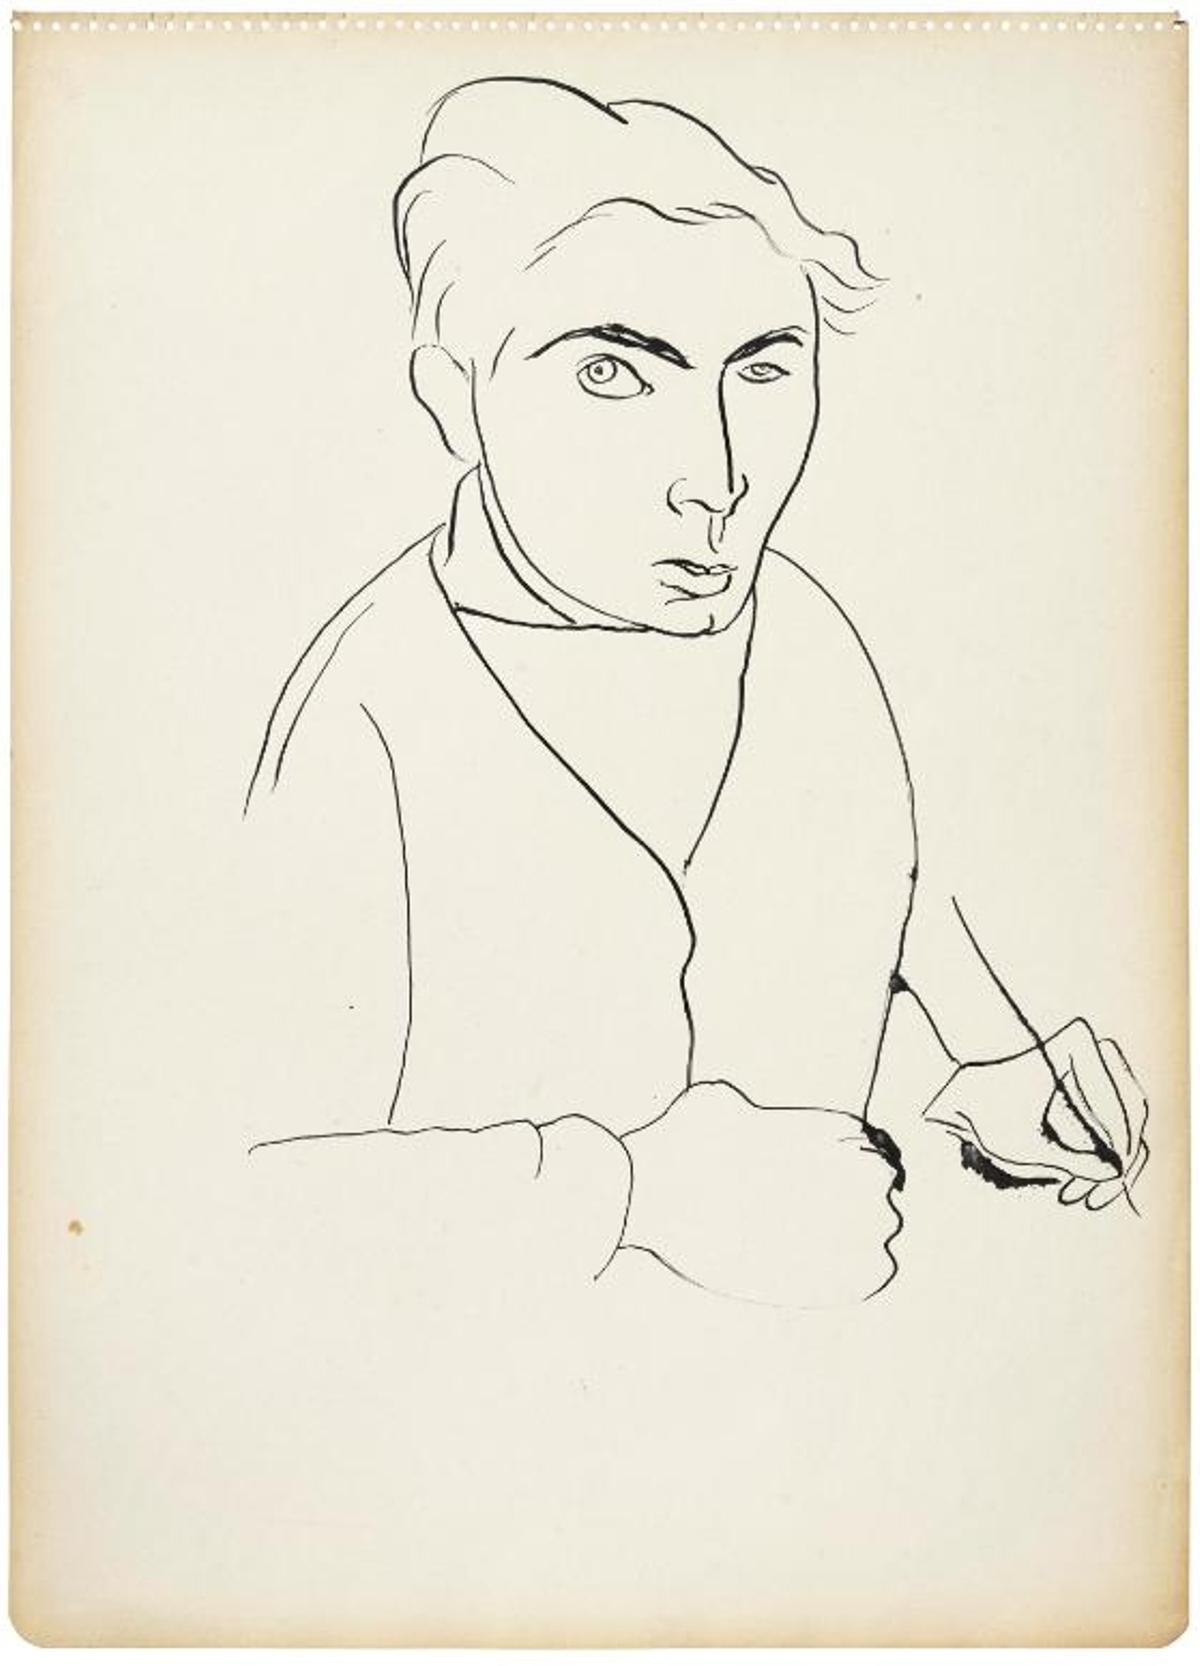 'Autorretrato' (1945) de Tàpies, una de las obras que abre la exposición.